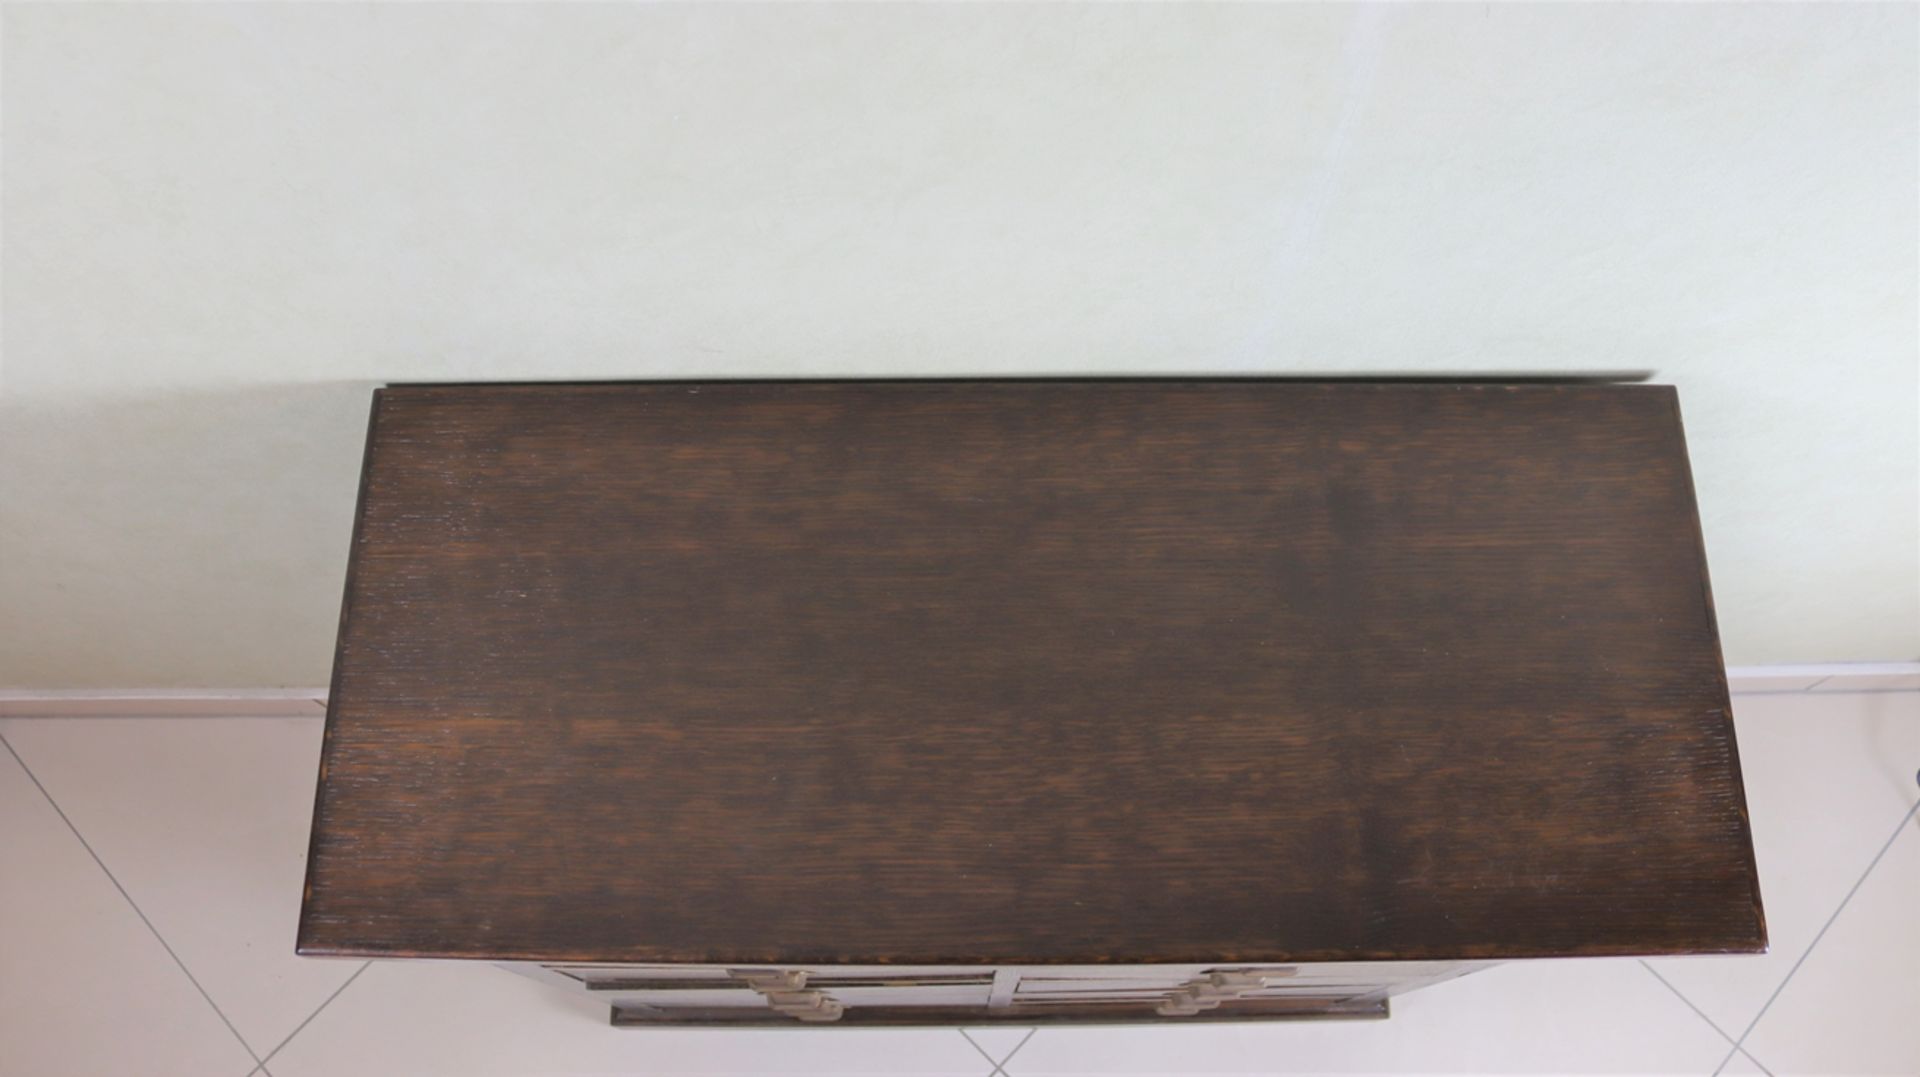 Apothekenschrank 1920-30, Eichenholz massiv, altrestauriert mit Ergänzungen, Eisenbeschläge origina - Bild 2 aus 2